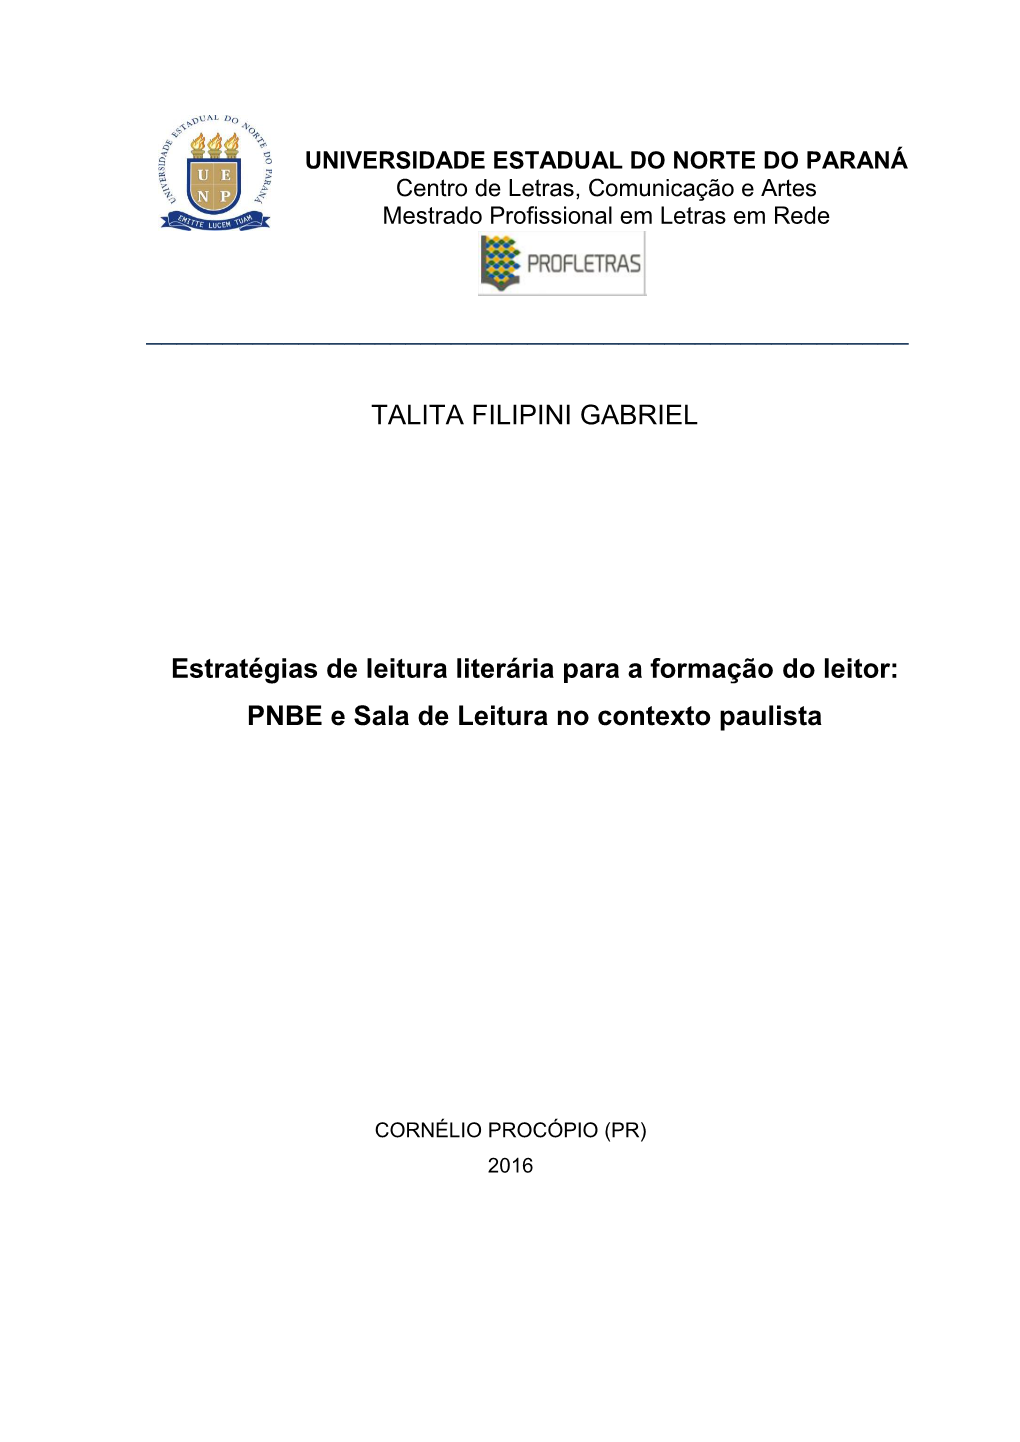 Talita Filipini Gabriel “Estratégias De Leitura Literária Para a Formação Do Leitor: PNBE E Sala De